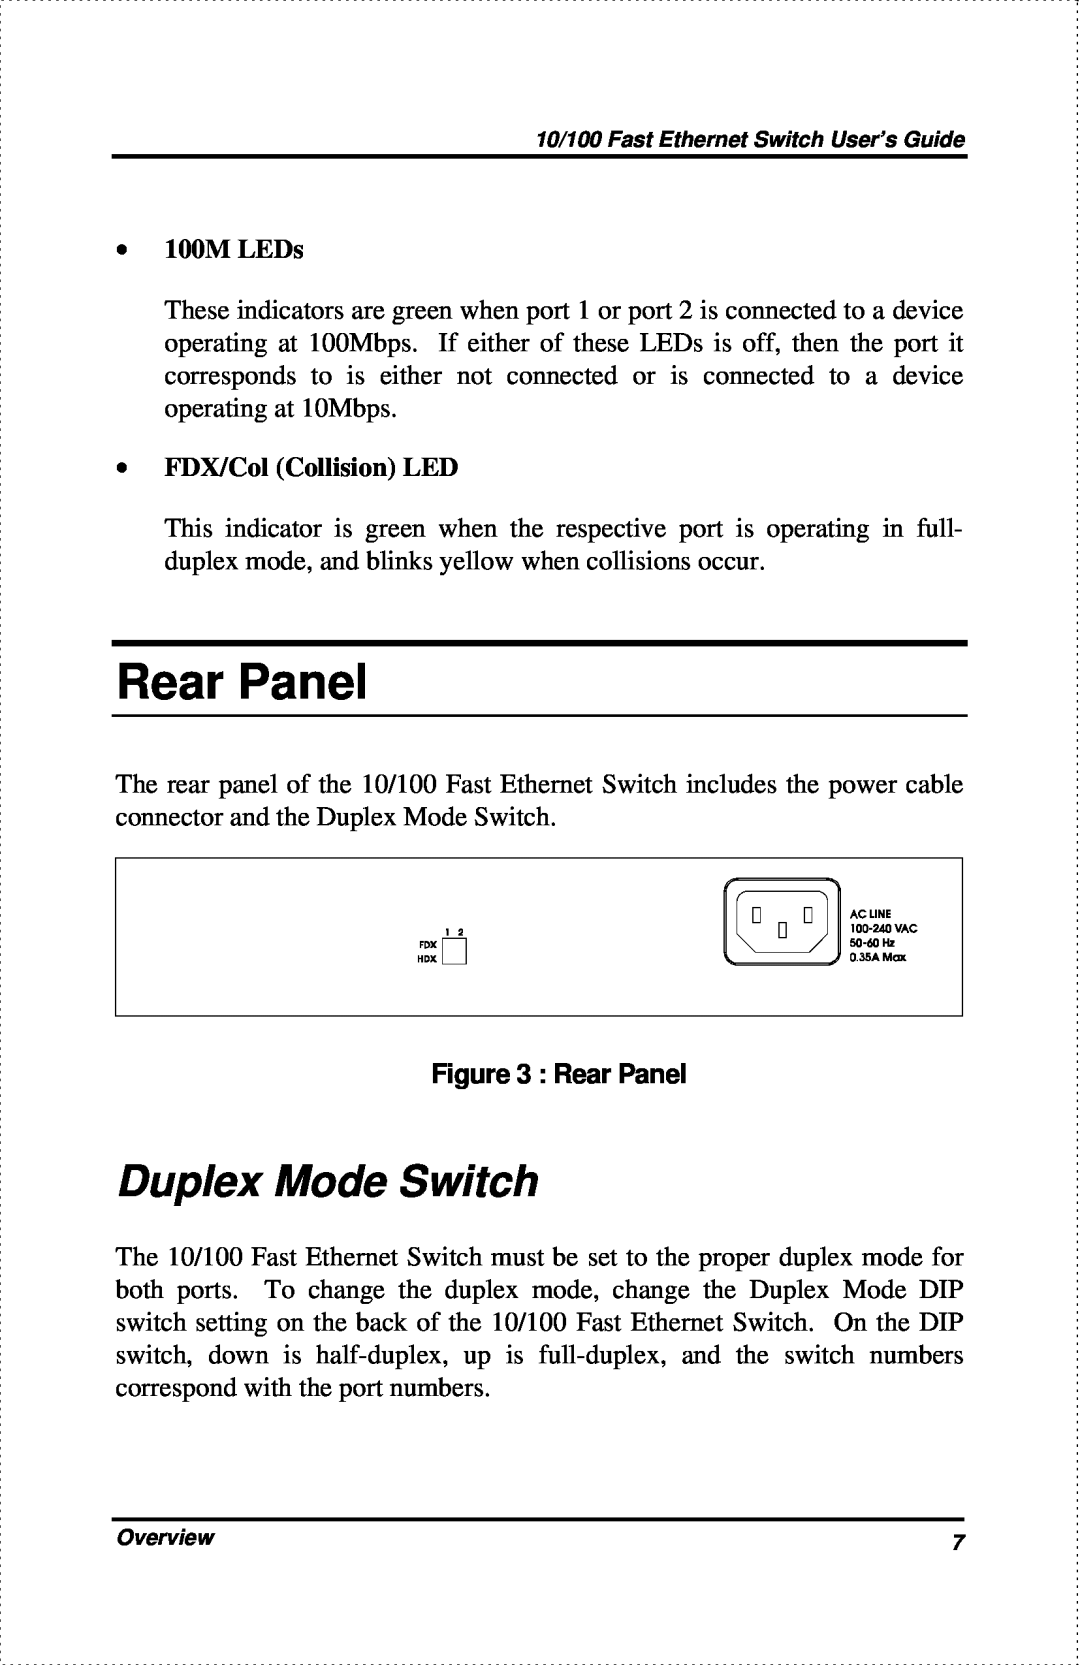 D-Link DES-802 manual Rear Panel, Duplex Mode Switch, ∙ 100M LEDs, ∙ FDX/Col Collision LED 